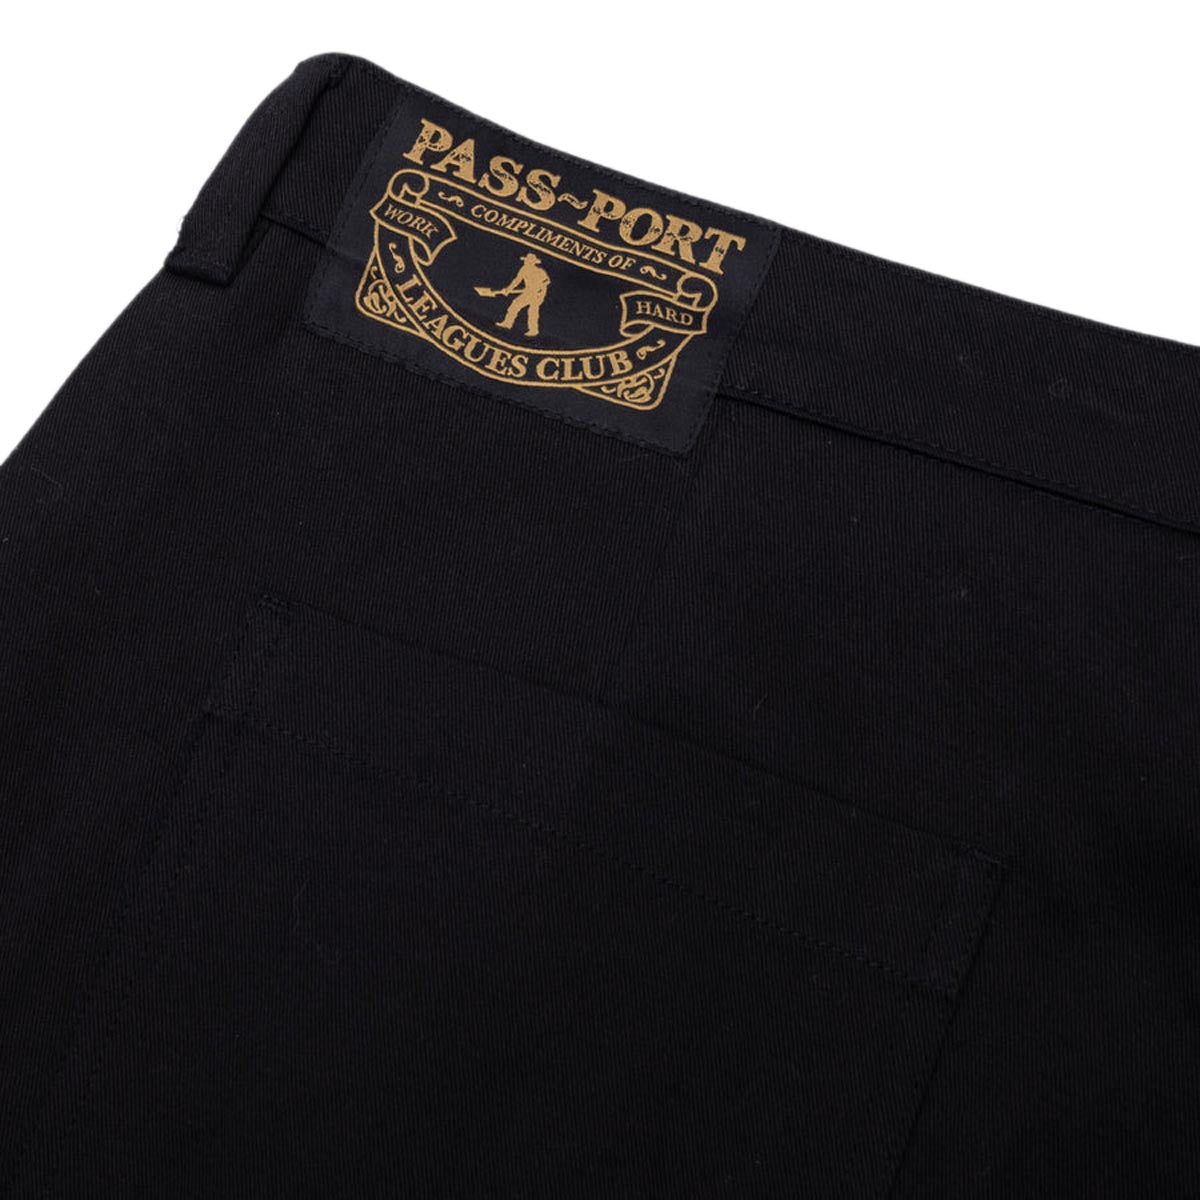 Passport Leagues Club Pants - Black image 5